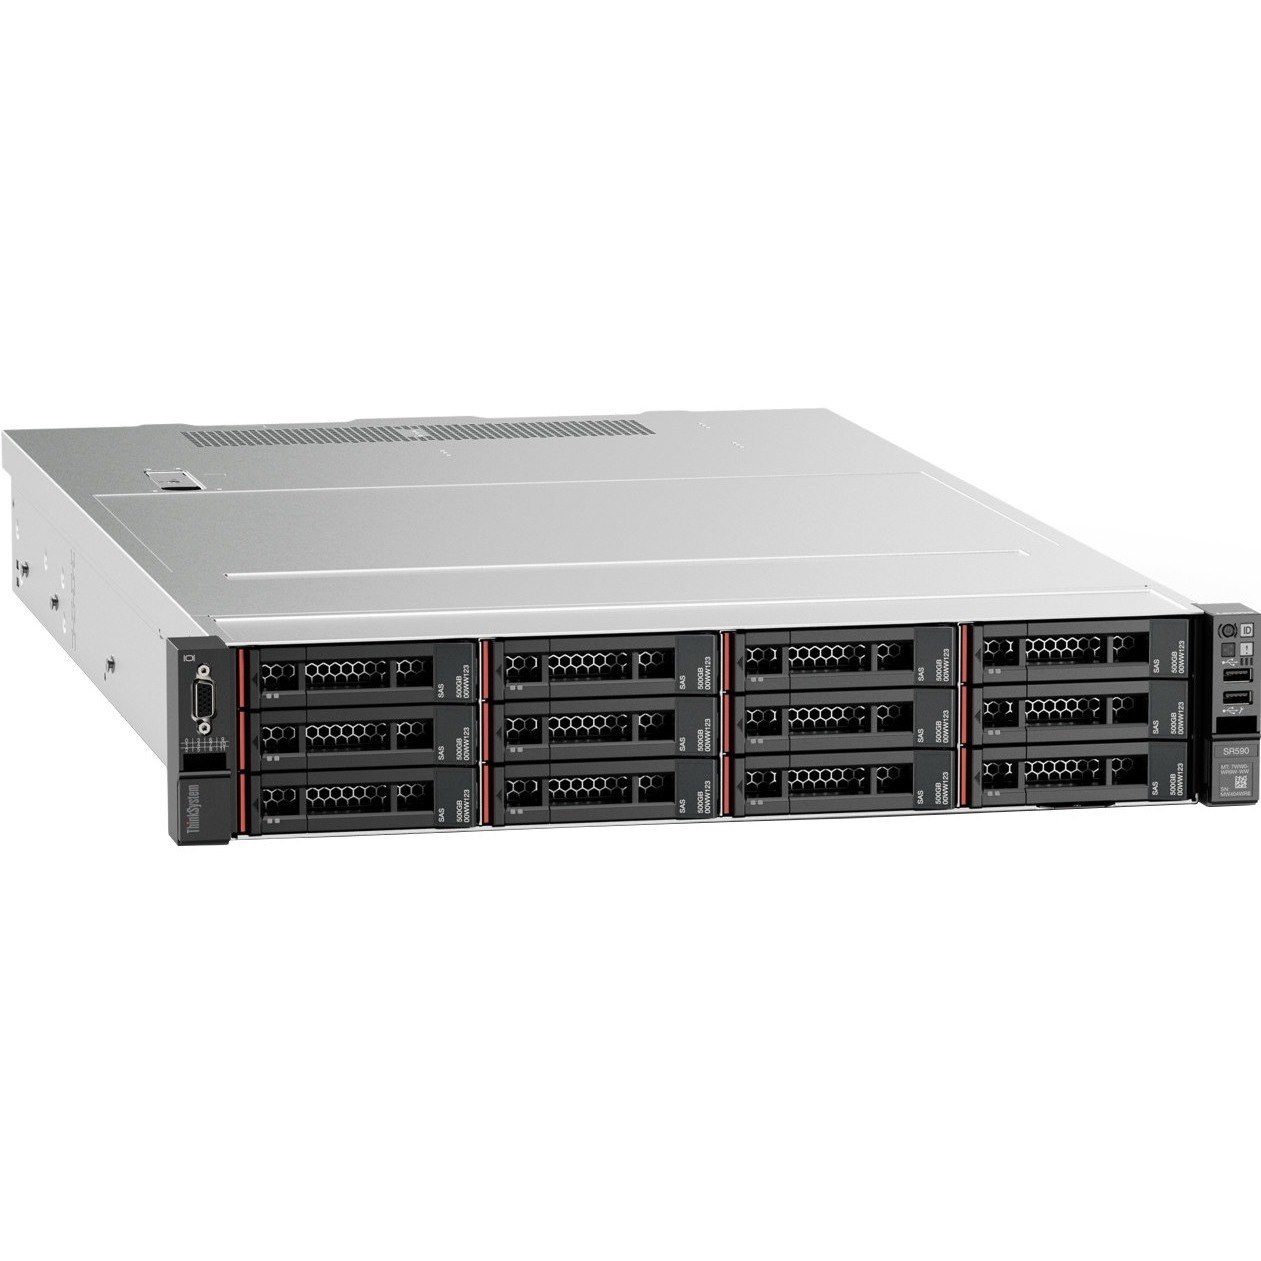 Lenovo ThinkSystem SR590 7X99A07BAU 2U Rack Server - 1 x Intel Xeon Silver 4210 2.20 GHz - 16 GB RAM - 12Gb/s SAS, Serial ATA/600 Controller